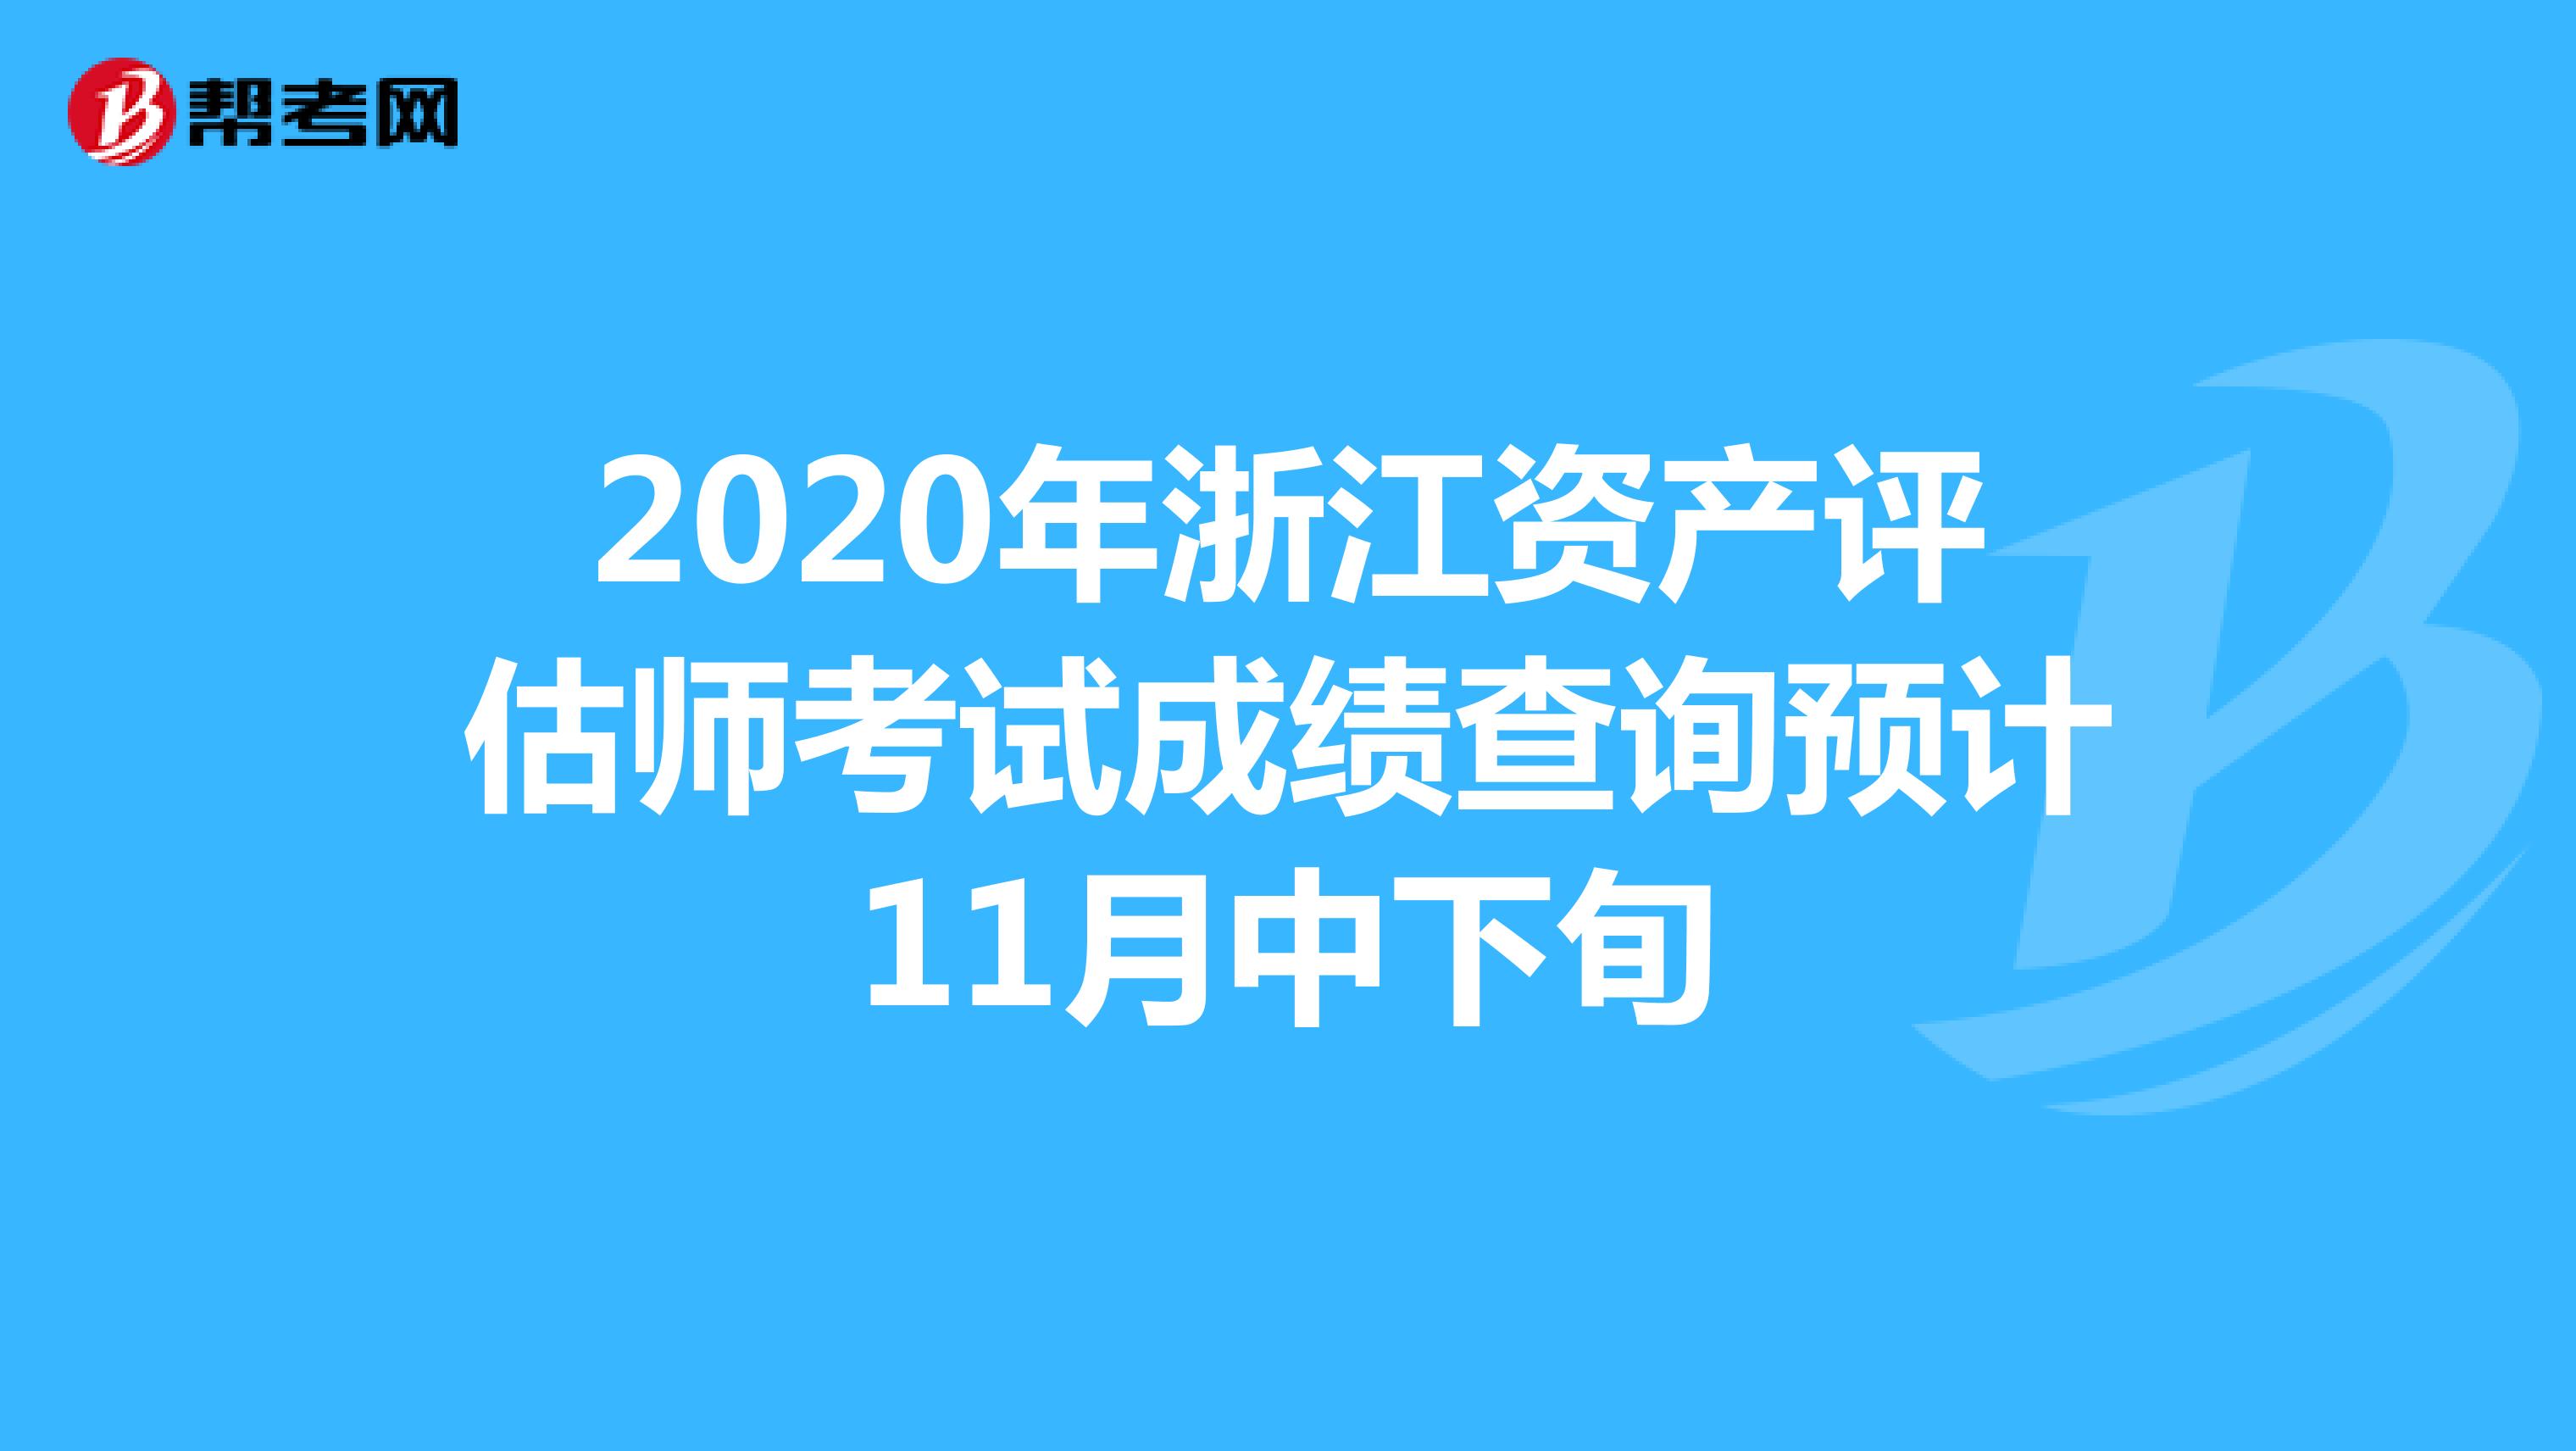 2020年浙江资产评估师考试成绩查询预计11月中下旬